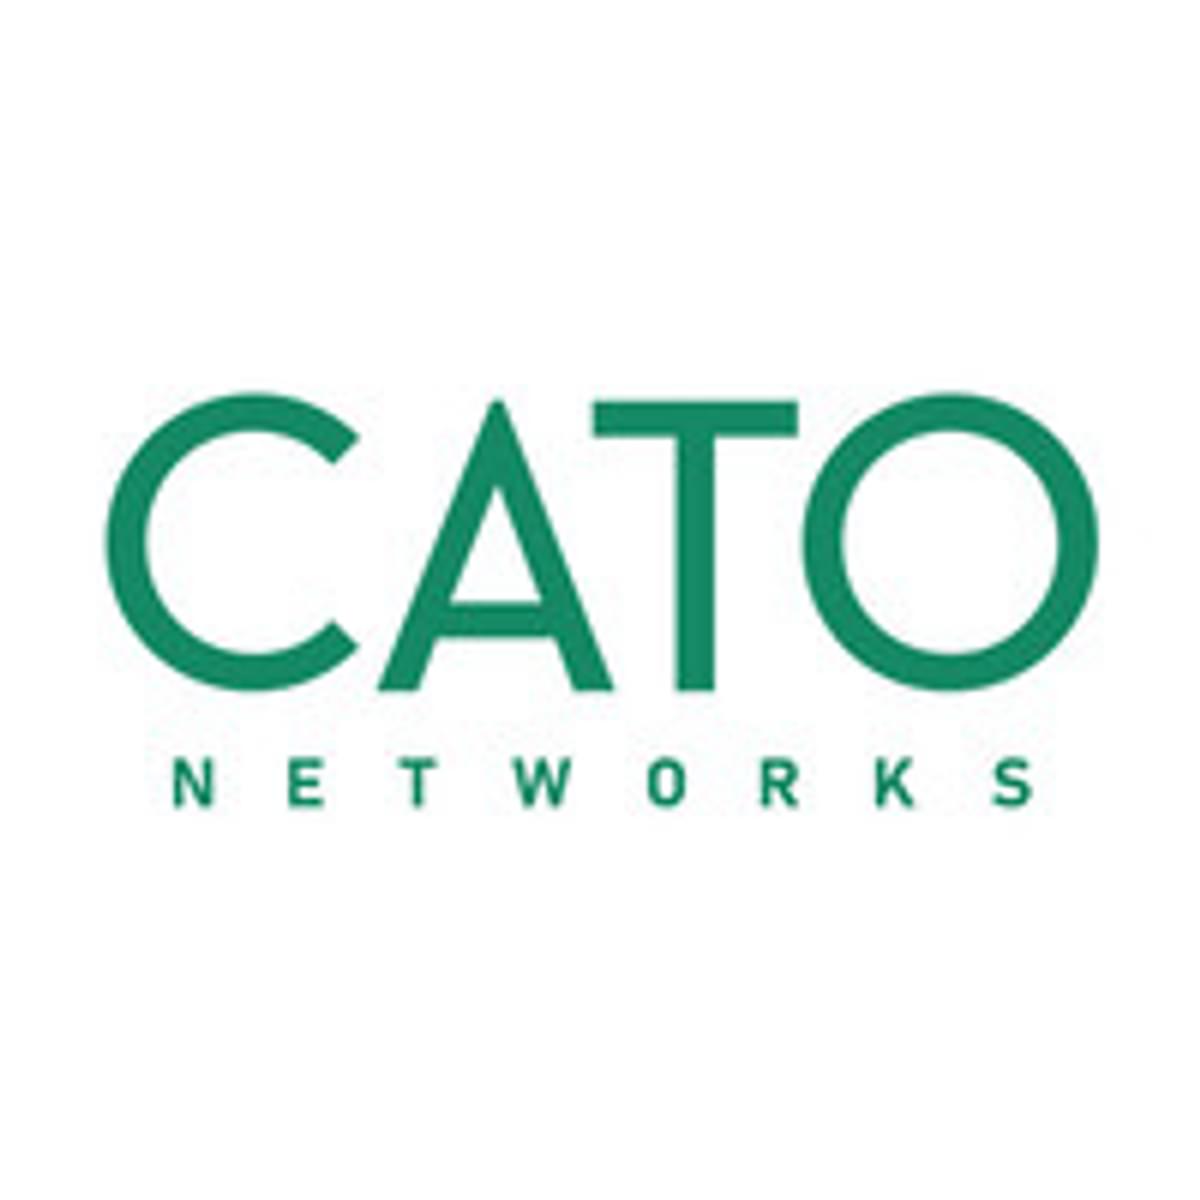 Cato Networks krijgt flink kapitaal voor uitbouw Secure Access Service Edge platform image